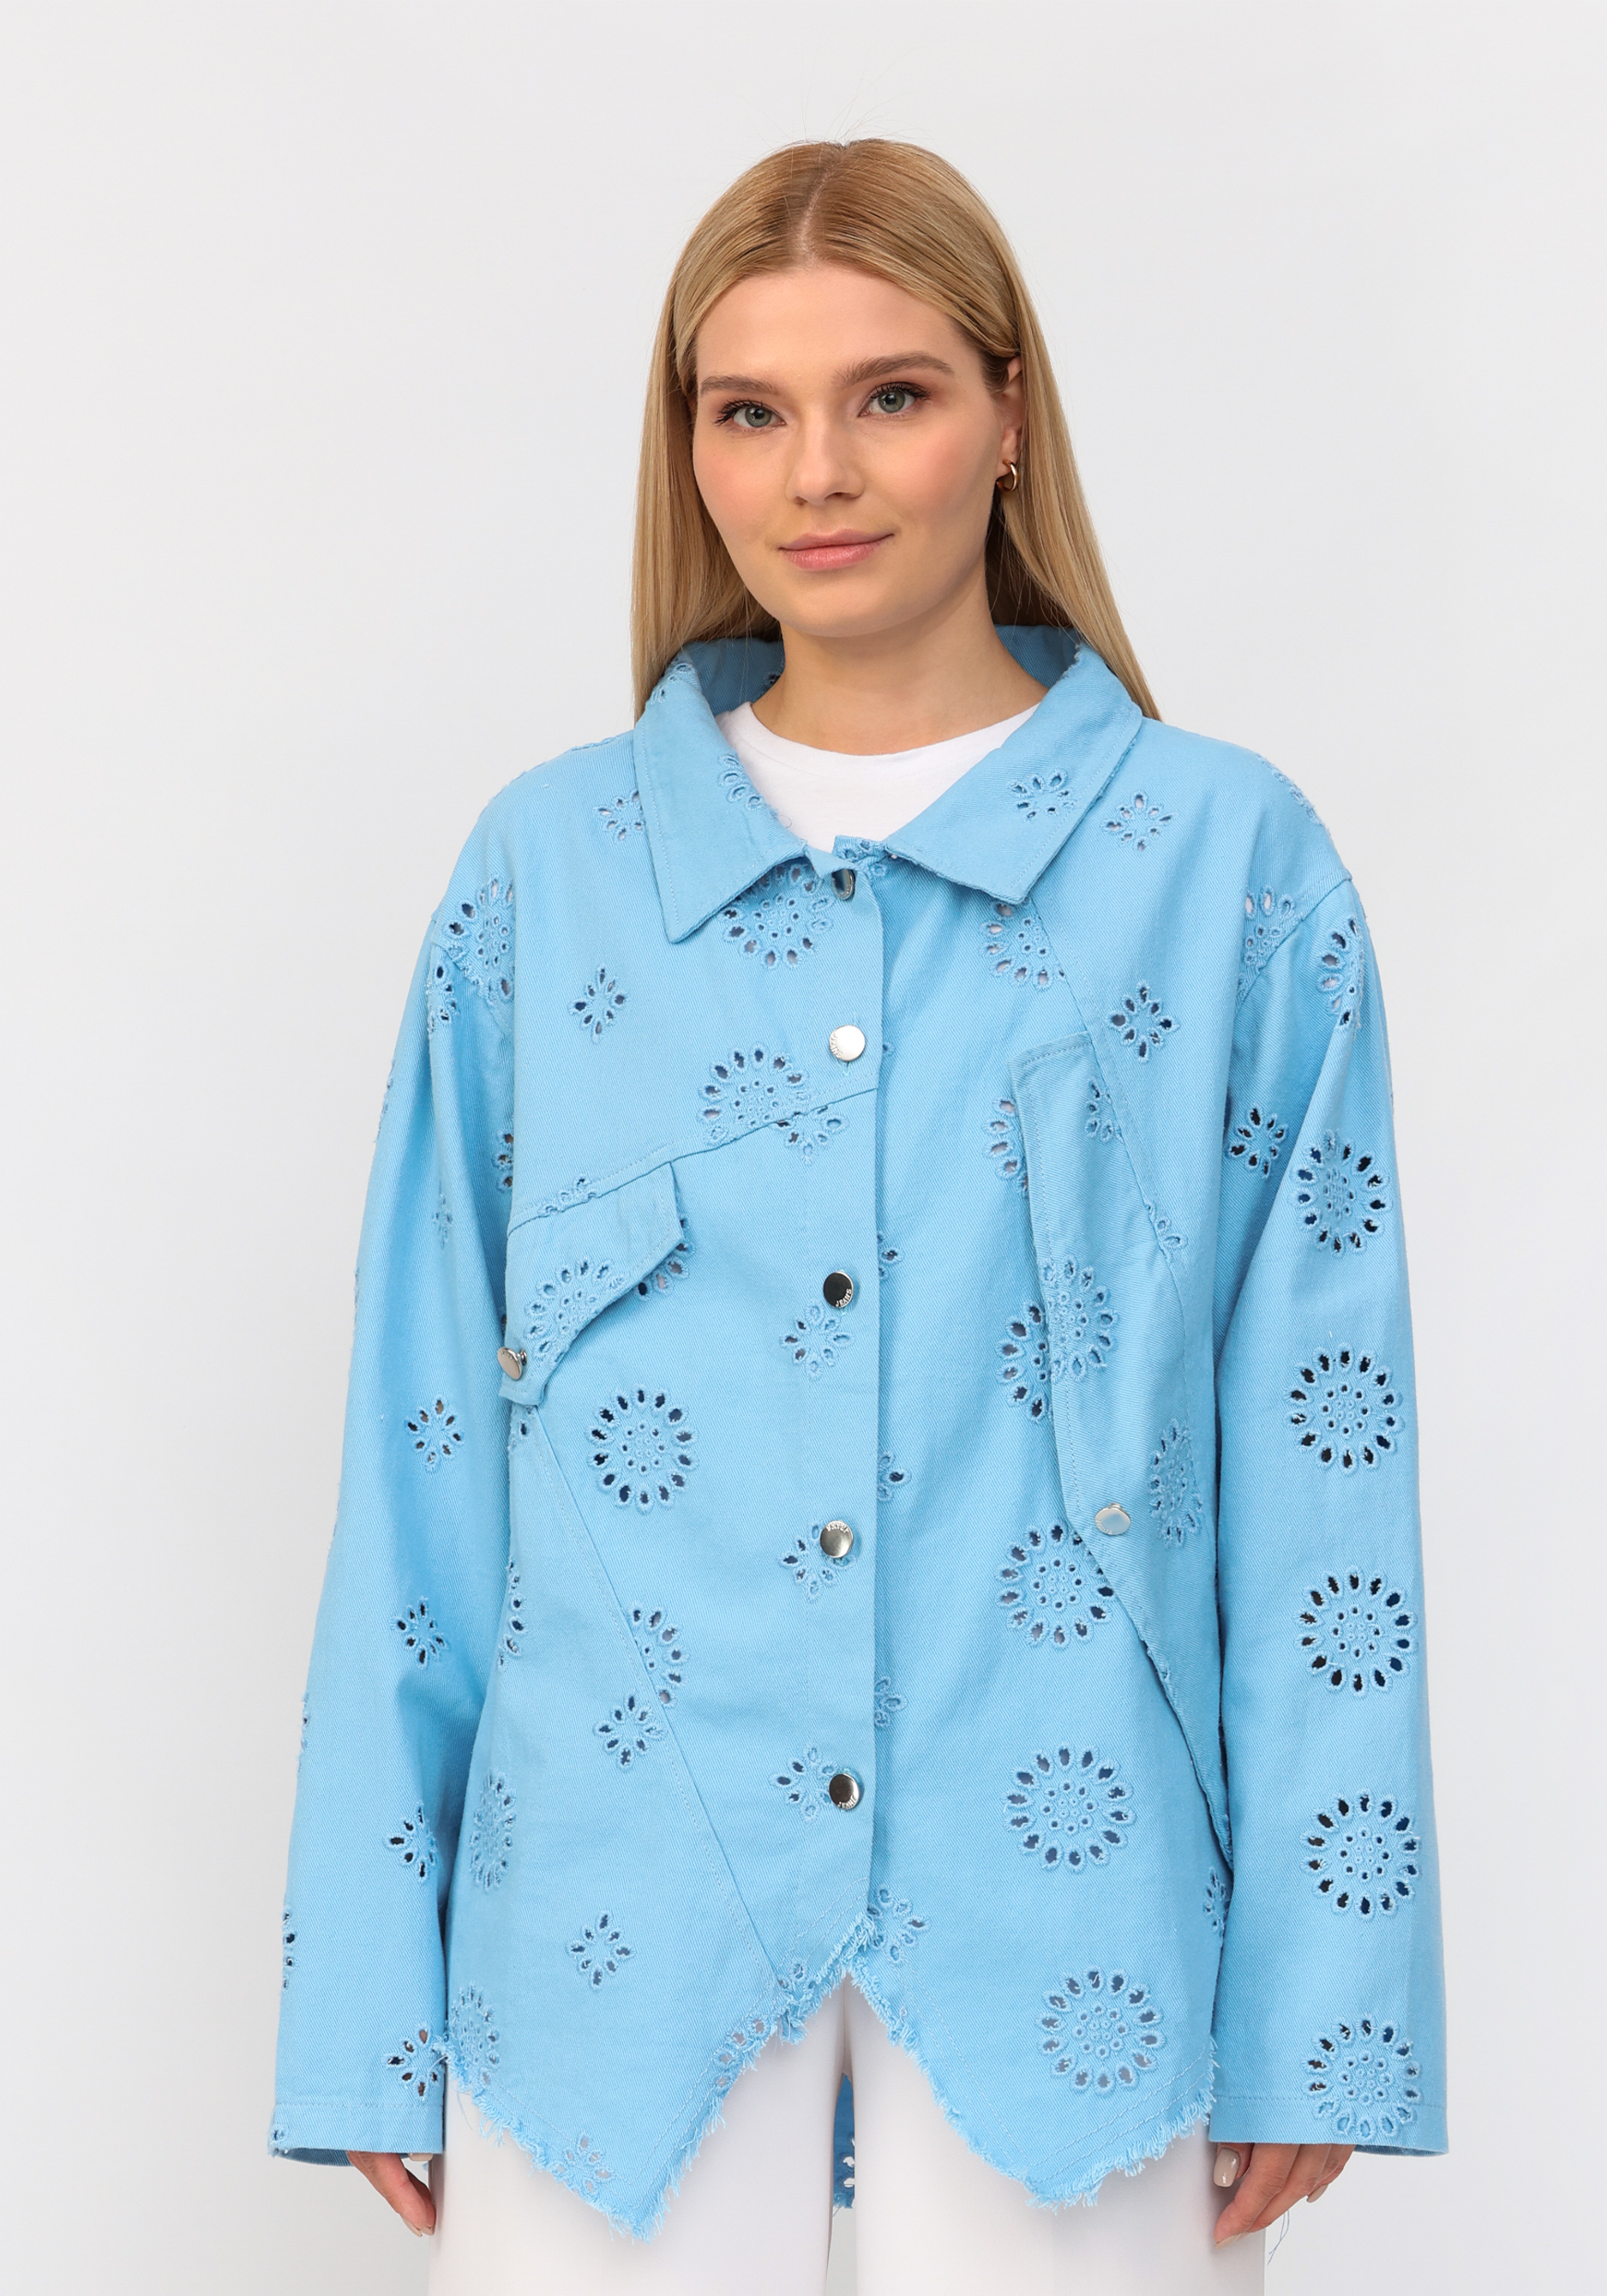 Джинсовая куртка с ришелье No name, размер 54-56, цвет голубой - фото 10